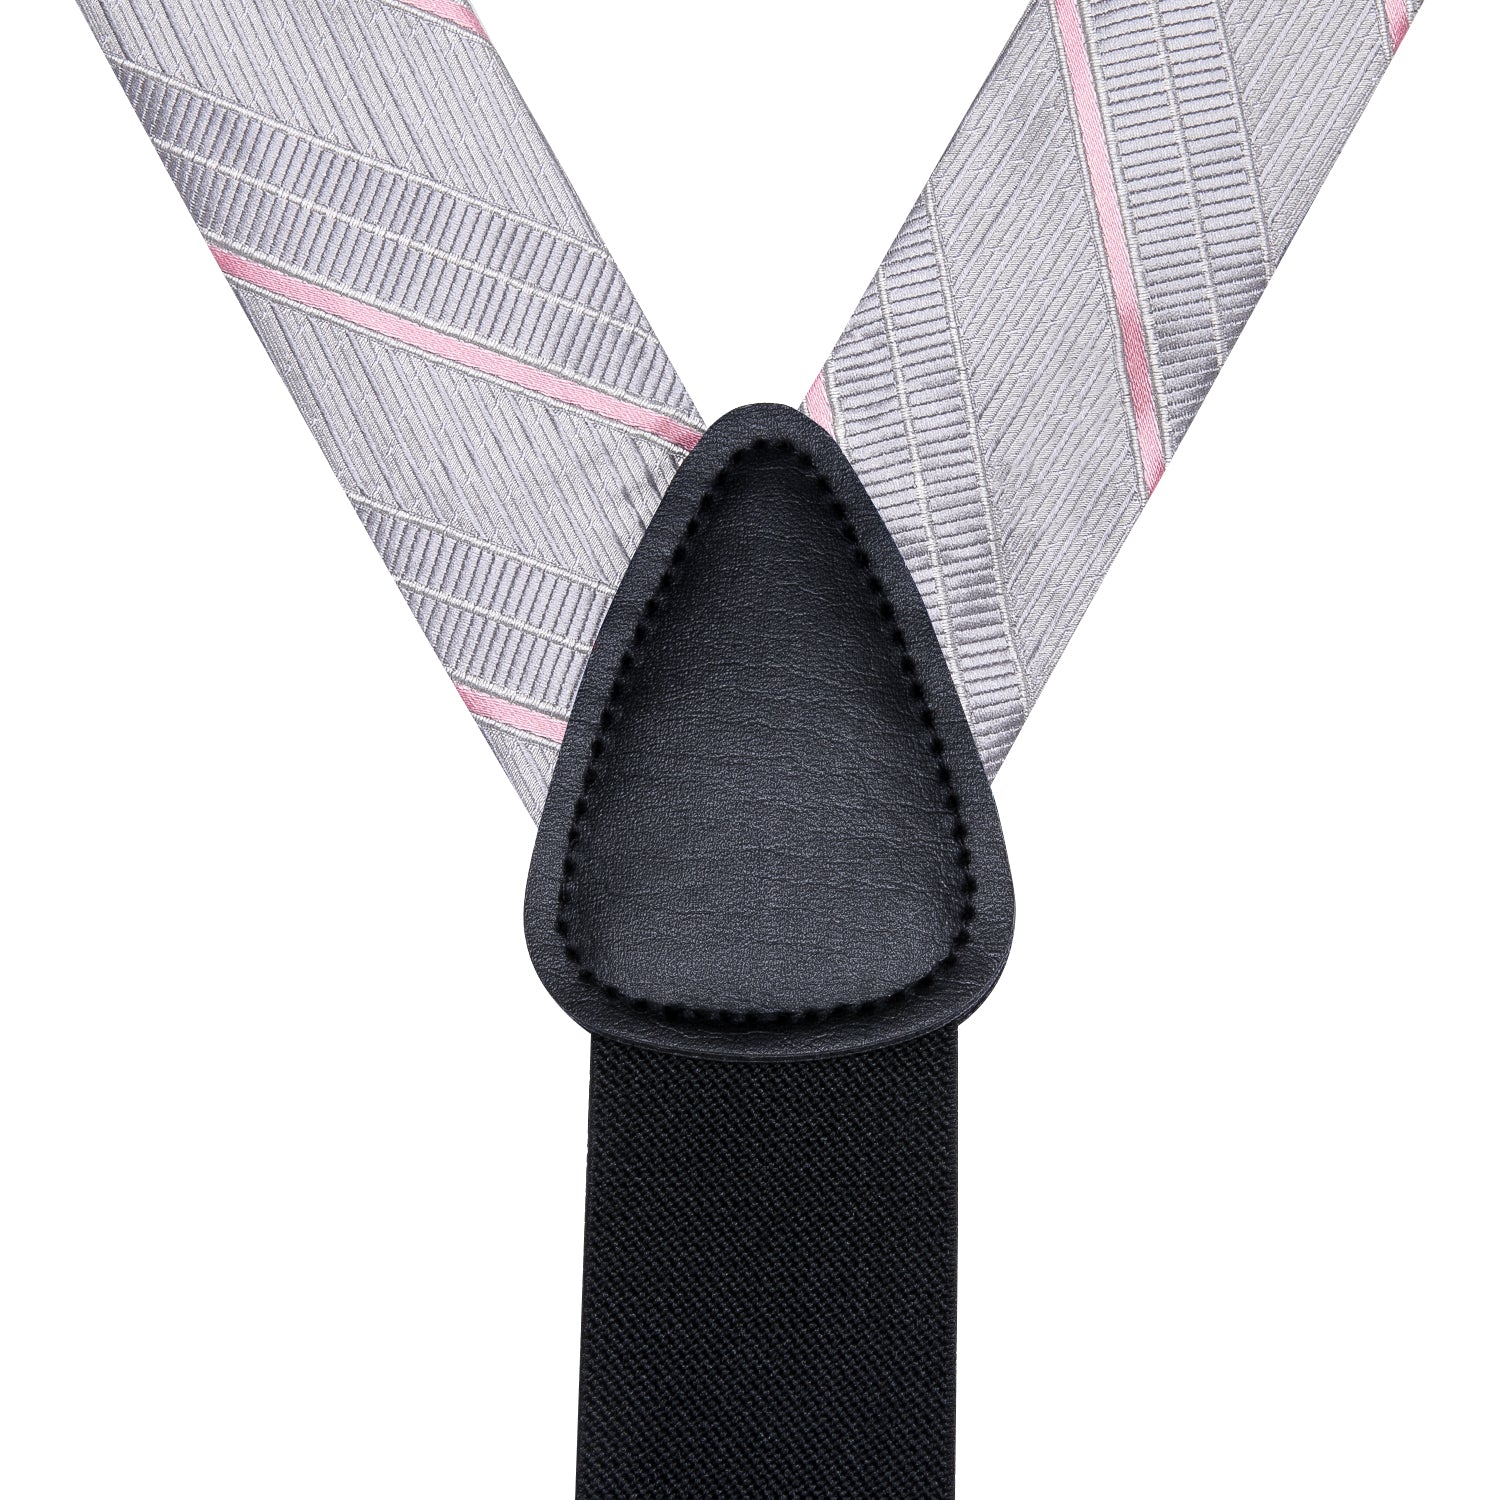 Grey Pink Striped Suspender Bowtie Hanky Cufflinks Set